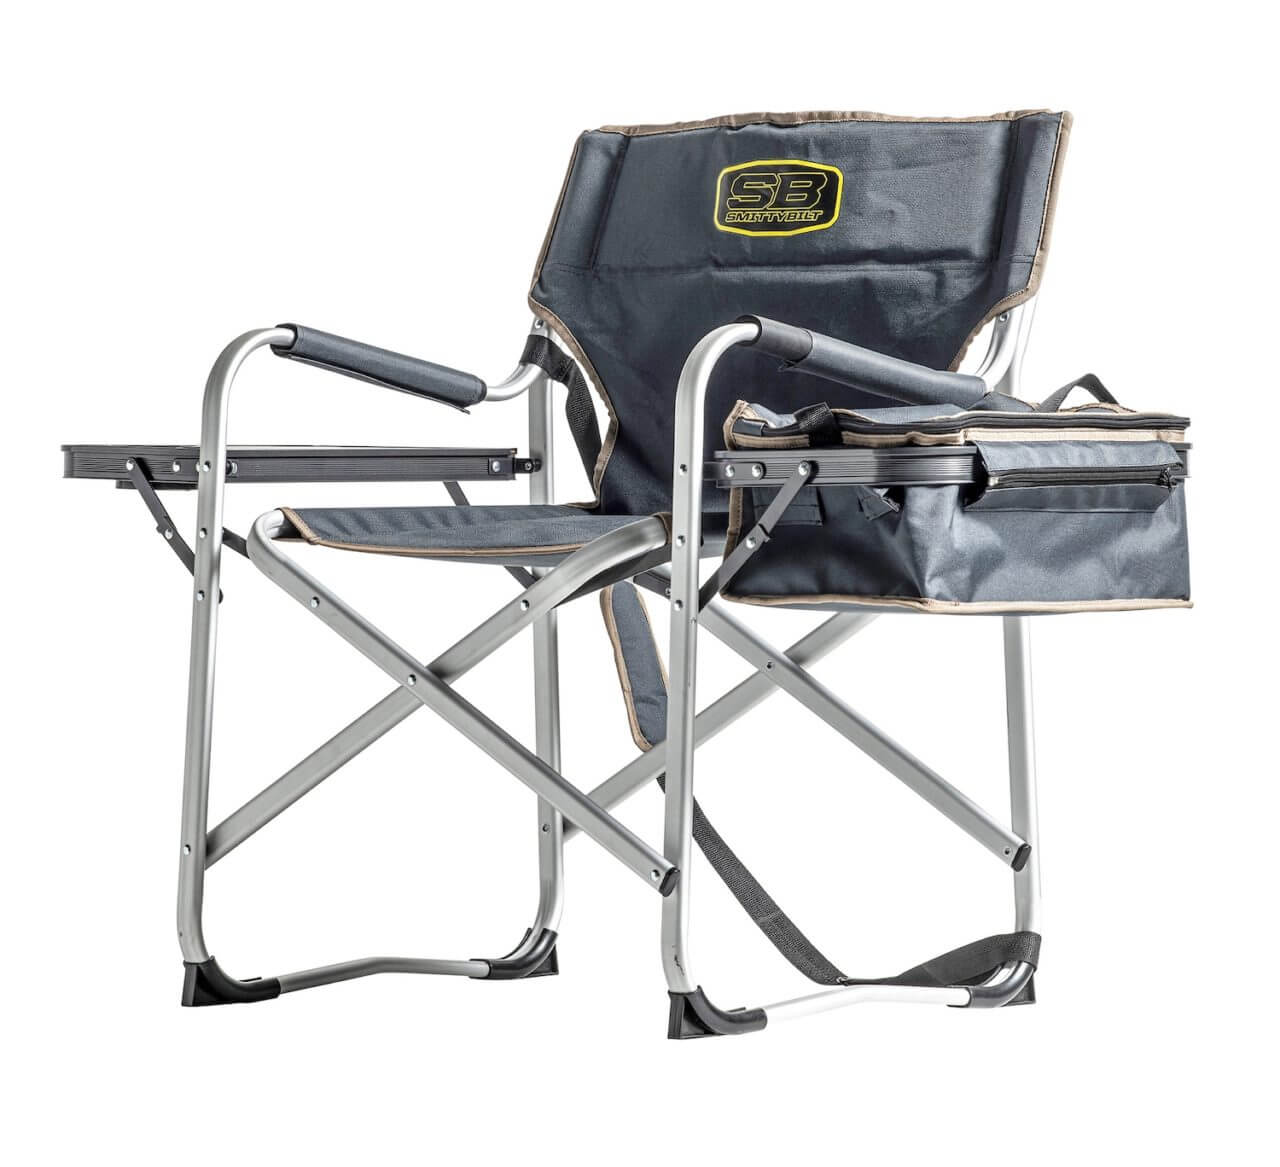 15 smittybilt overlander camping chair